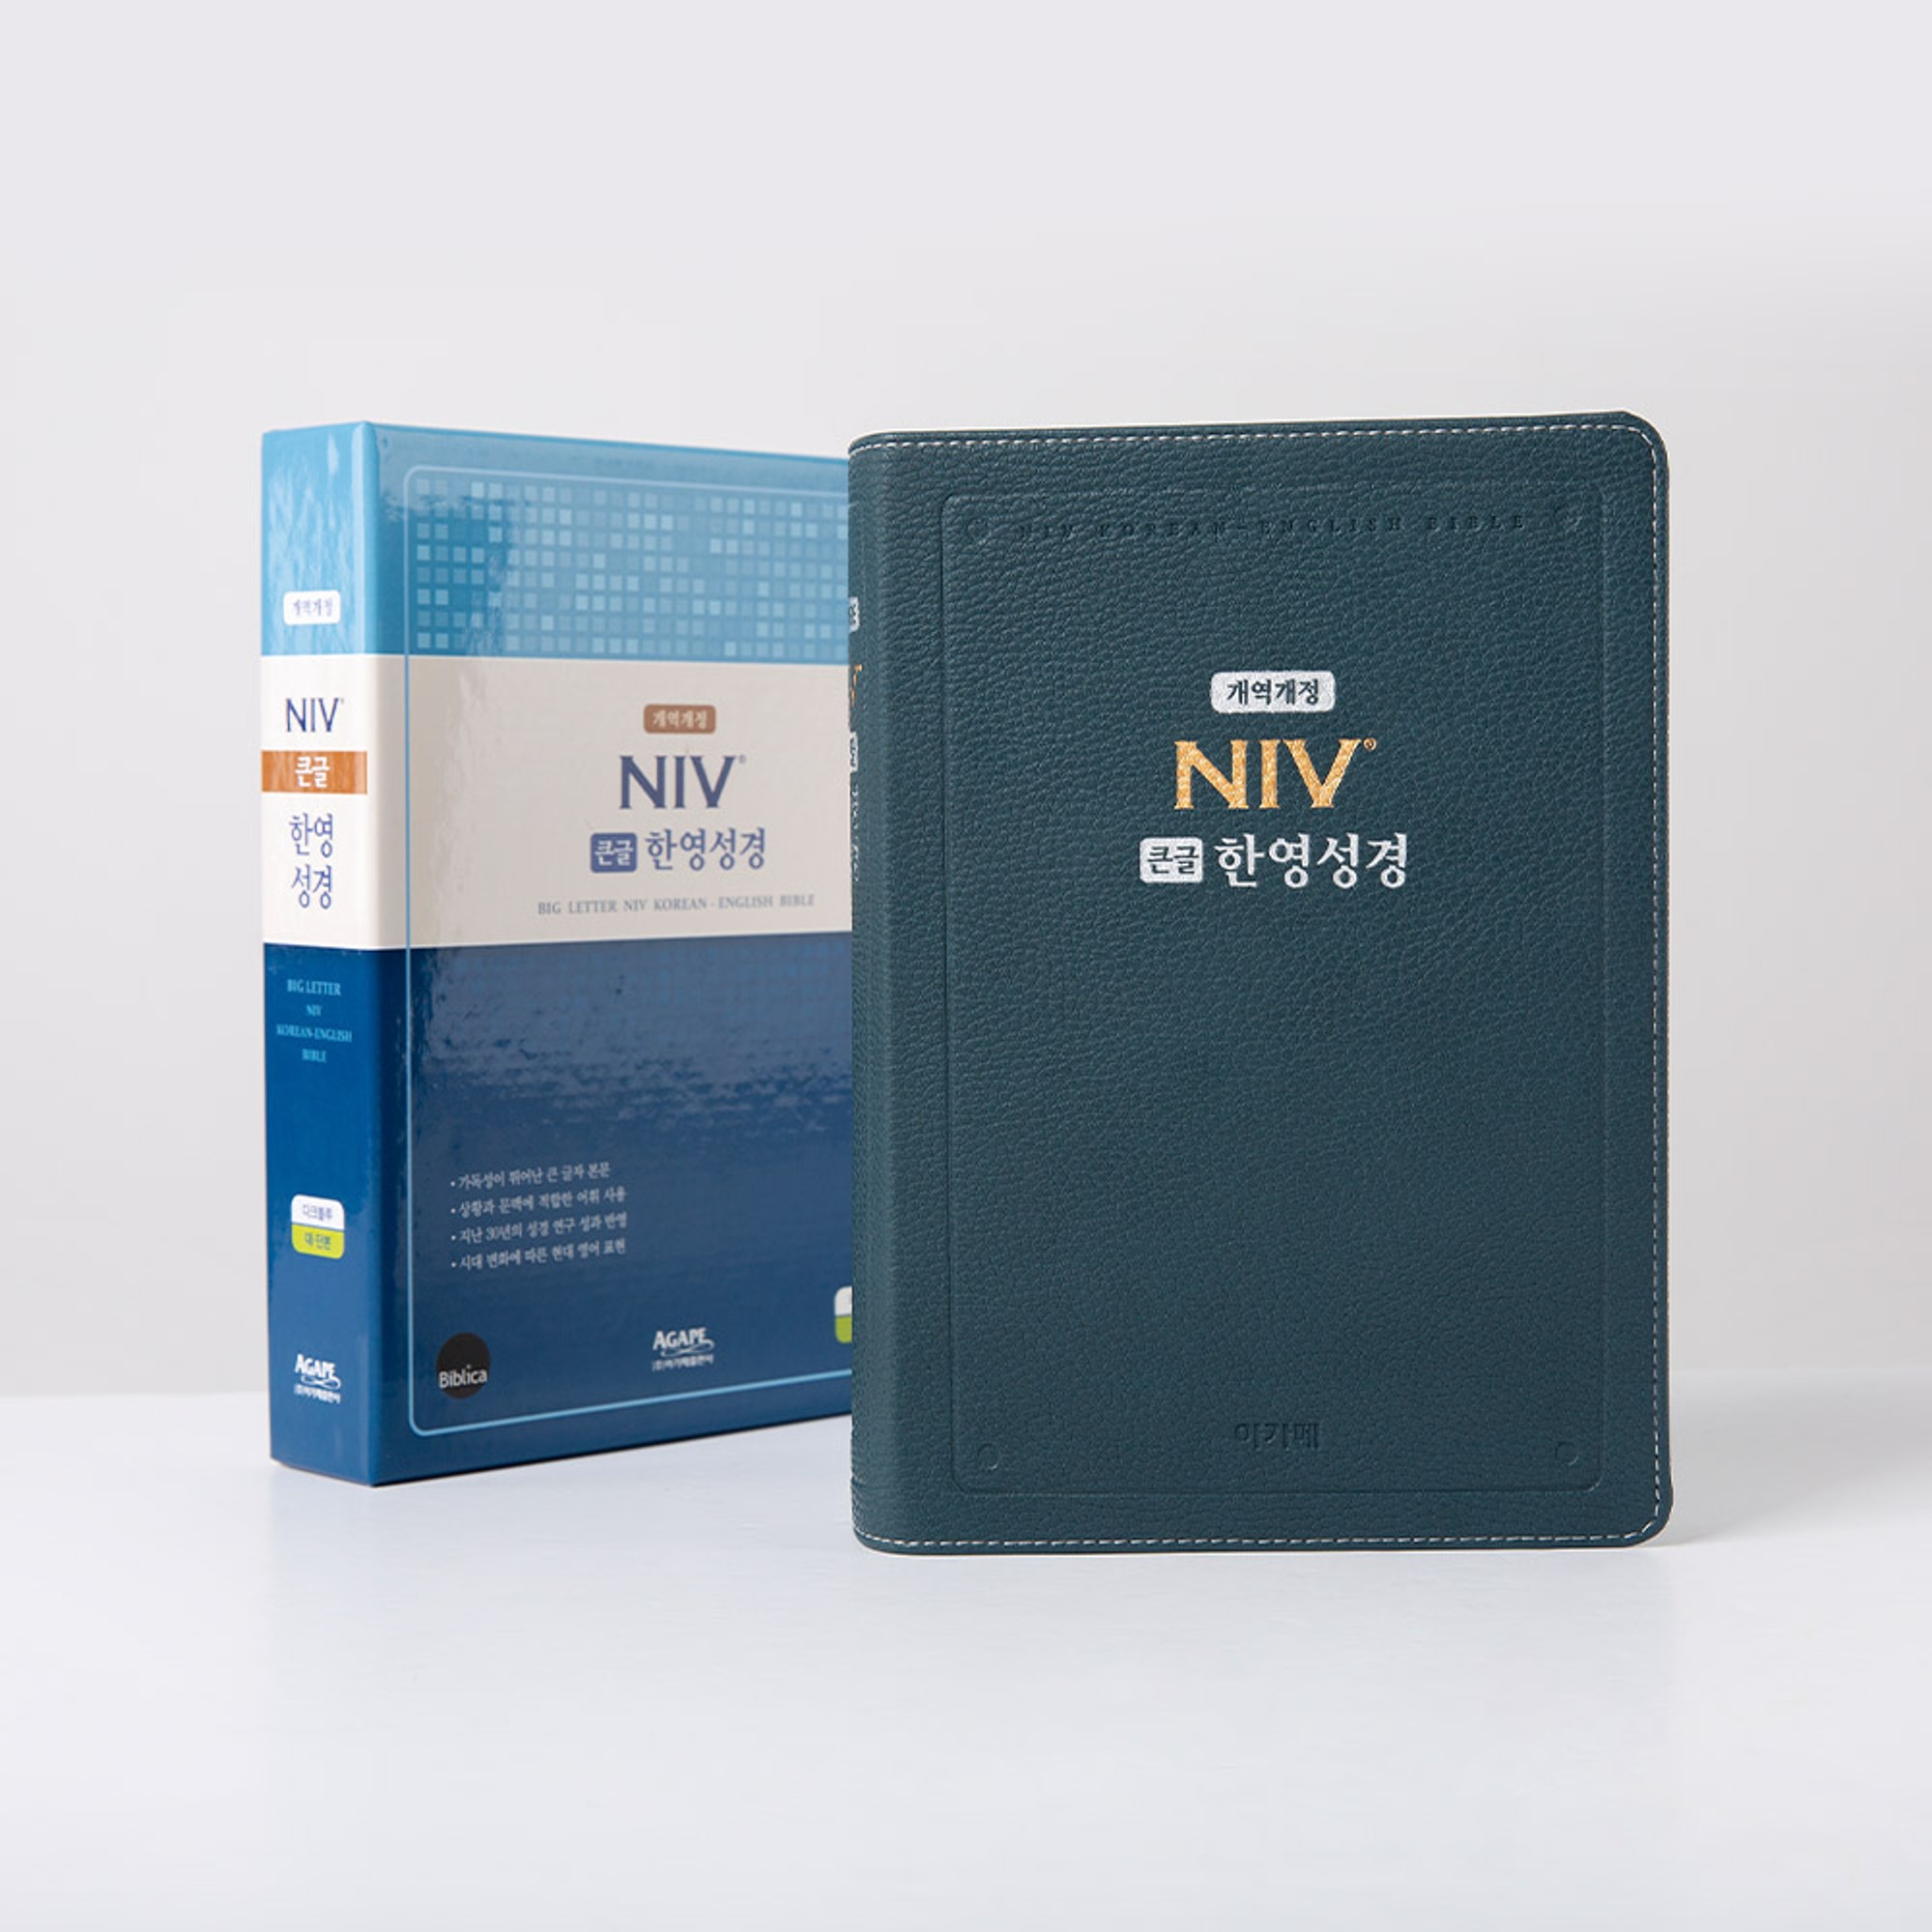 NIV한영해설성경/개역개정/대단본/다크블루